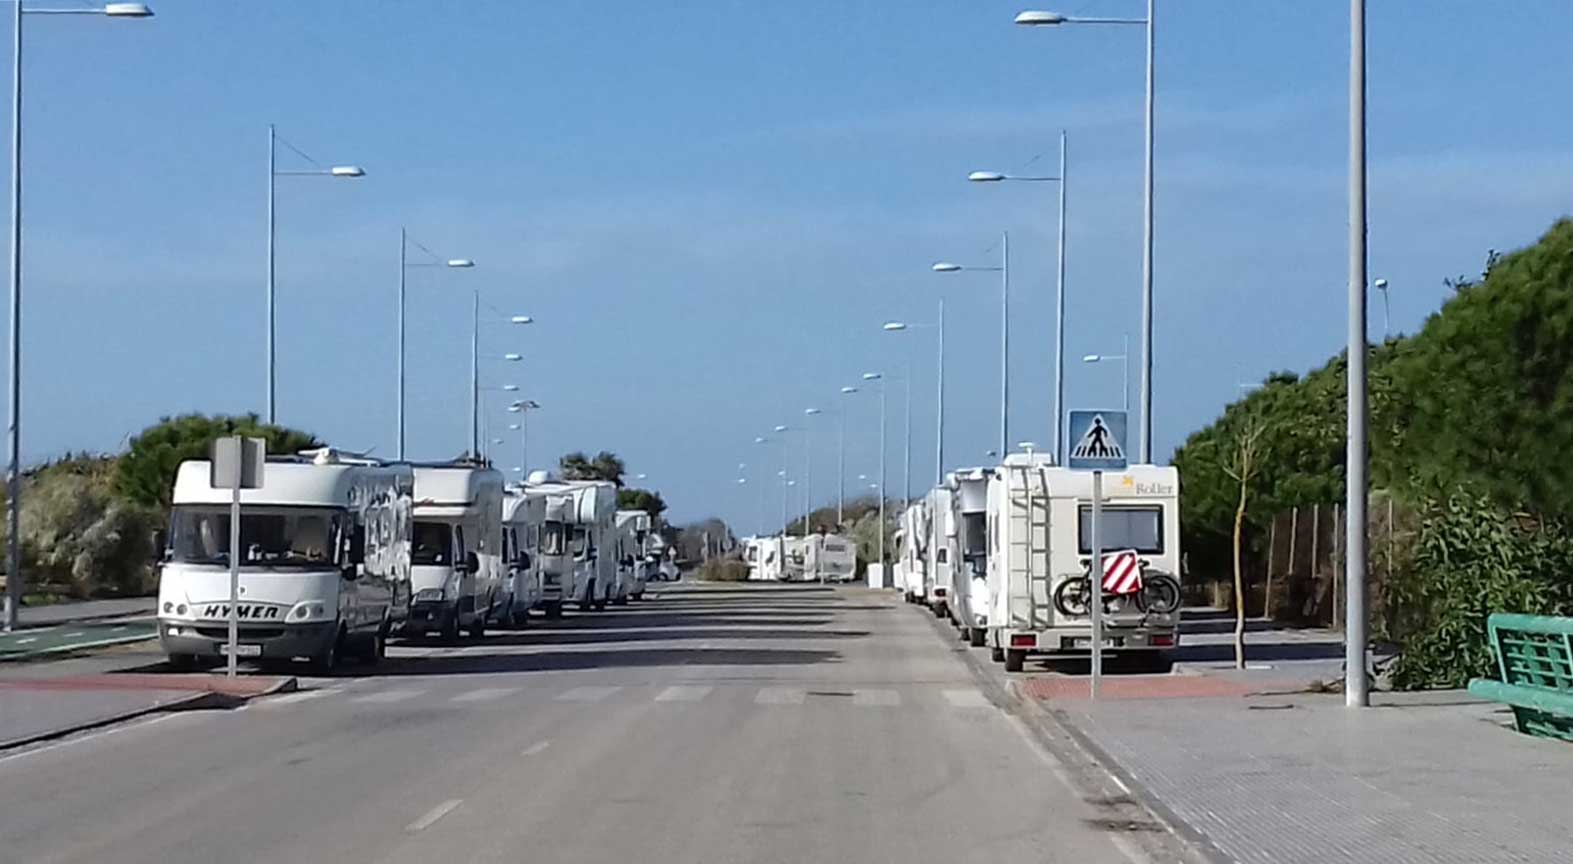 Caravanas aparcadas en la zona aledaña de Punta Candor, en Rota